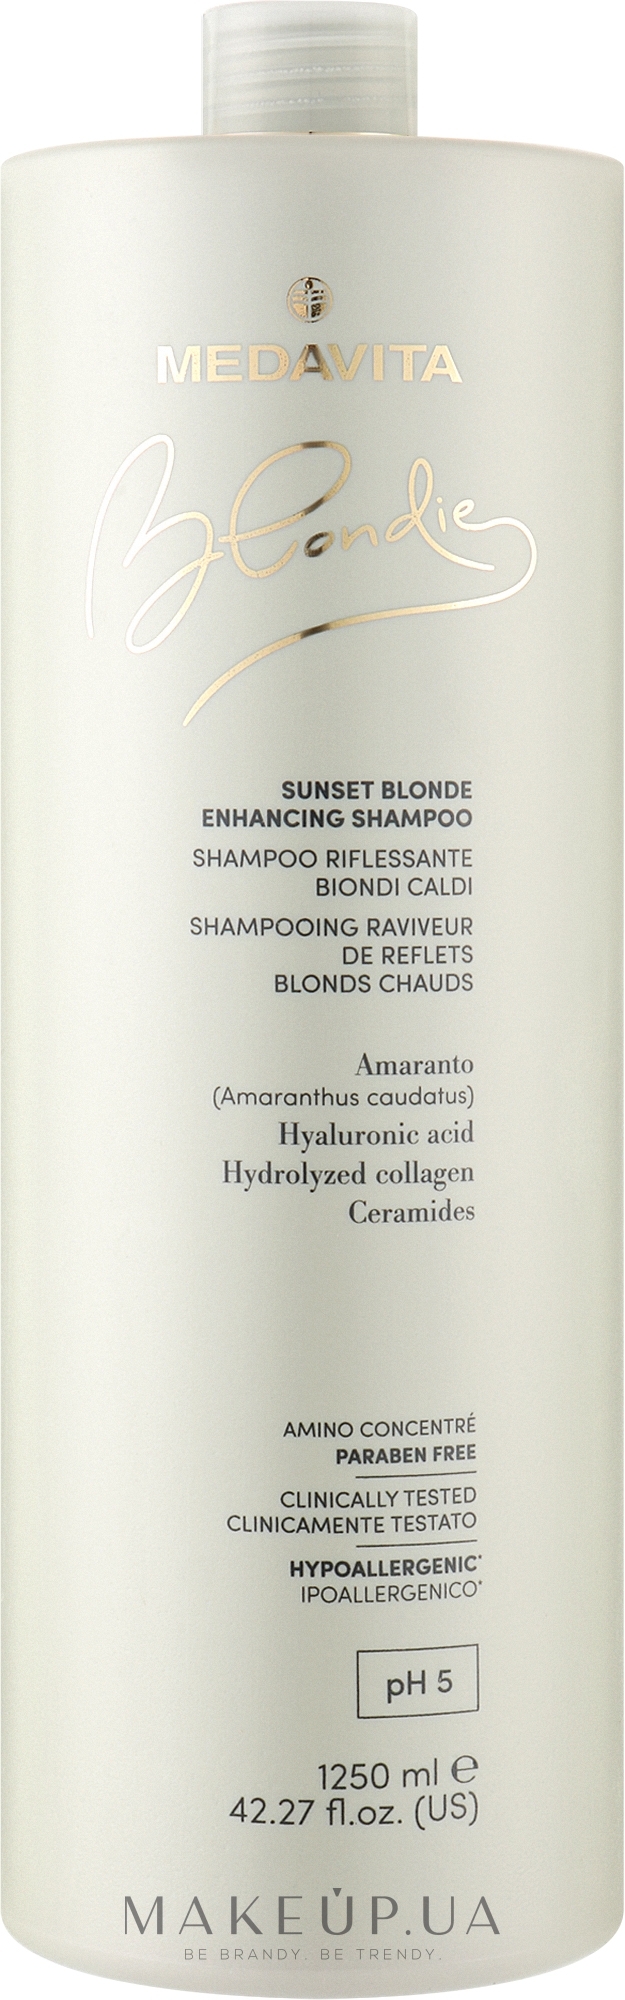 Укрепляющий шампунь для усиления теплых оттенков блонда - Medavita Blondie Sunset Blonde Enhancing Shampoo — фото 1250ml